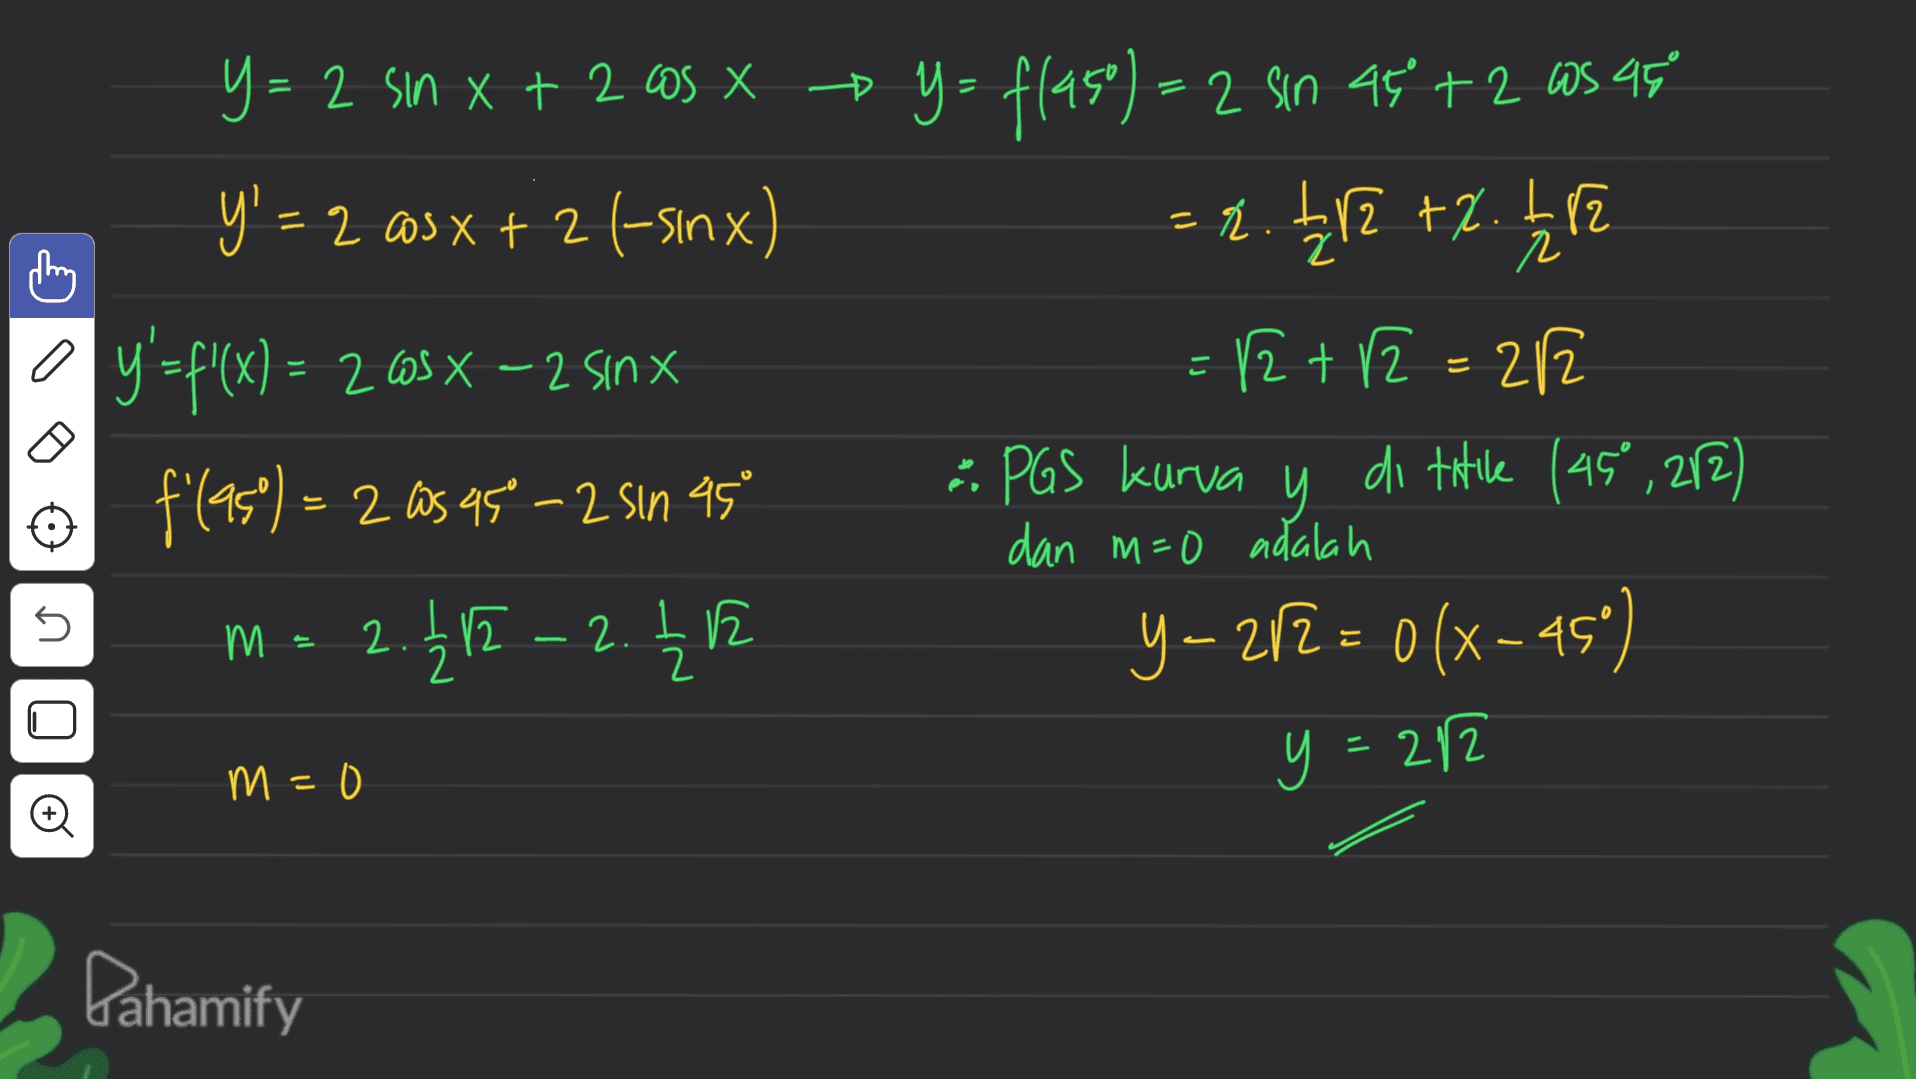 * - - r y= 2 sin x + 2 cos x y = flaso) = 2 sin 45 +2 as 95 + 2 y' = 2 = 2 @3x + 2 (-sinx) = 2. 112 +2.252 y = f'(x) = 265x – 2 sinx = 12 + 12 = 2/2 f(95%) = 2 as 95 -2 sin AS : PGS kurva y di titile (45° , 212) m = 2.2 - 2.42 Y-272 = 0 (x-45) x = dan m=0 adalah n . 212 1 y- 2 y = 282 m=0 Pahamify 